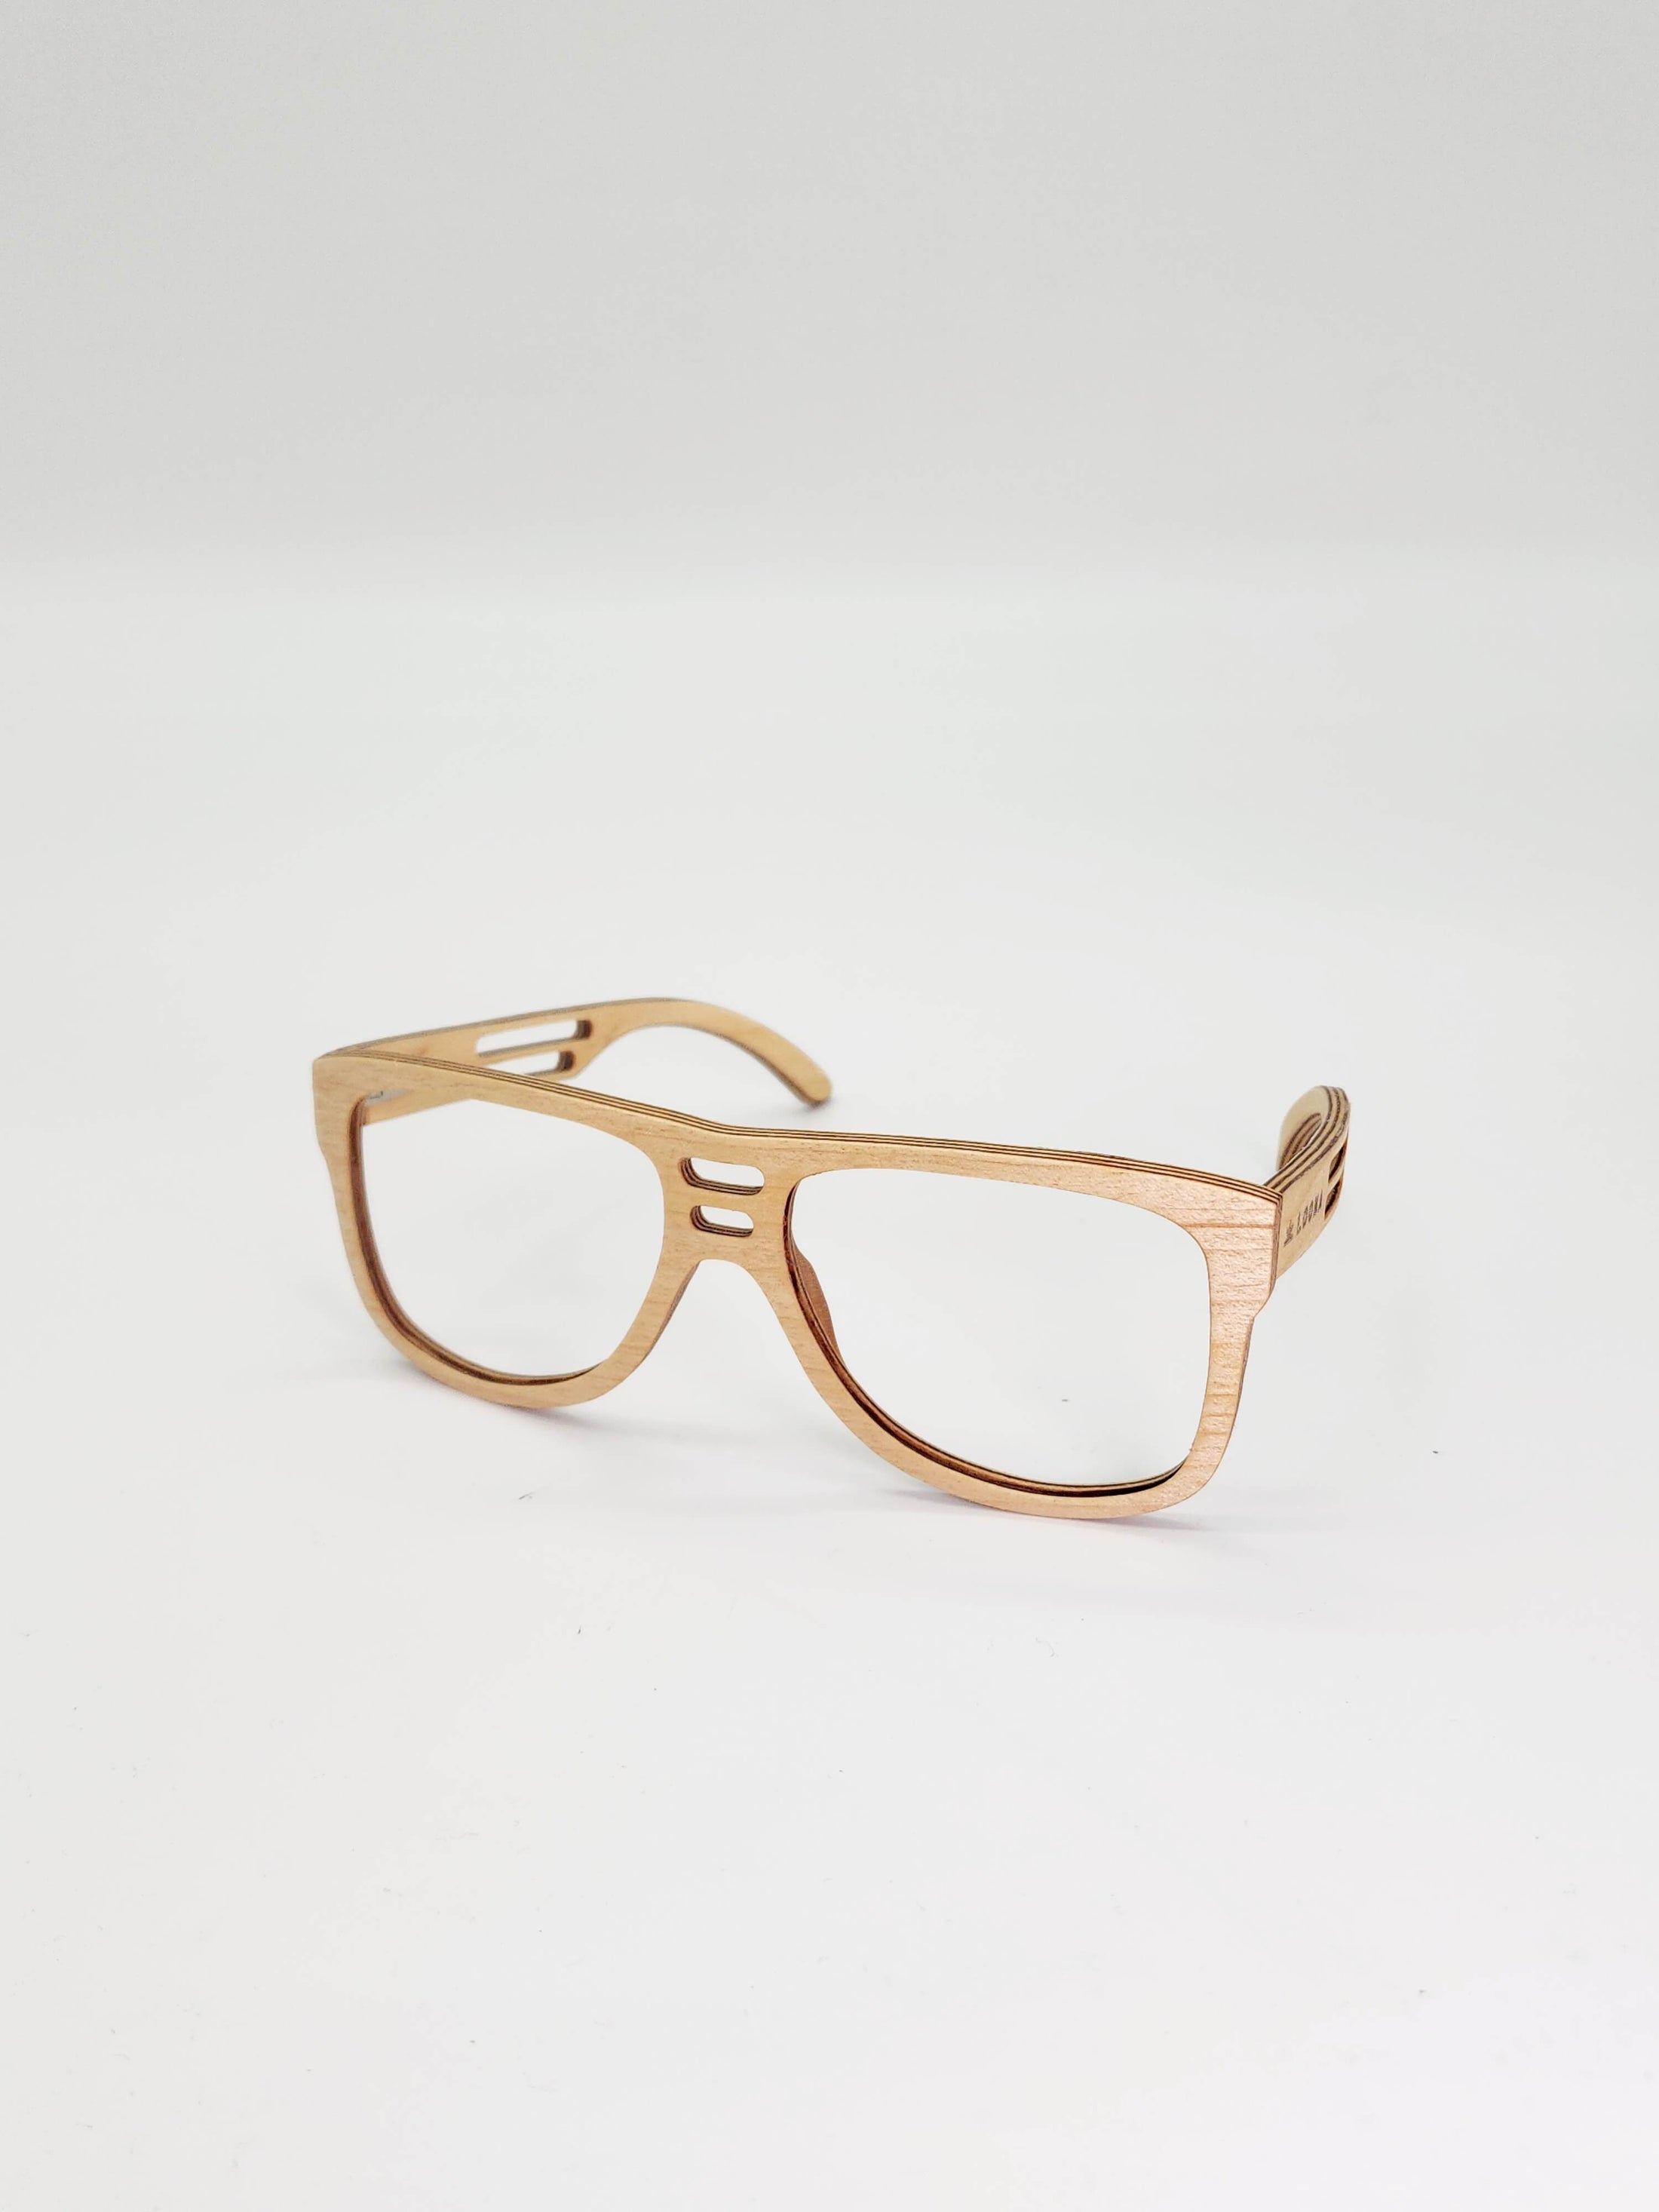 Solar Shield Maple Wooden Sunglasses